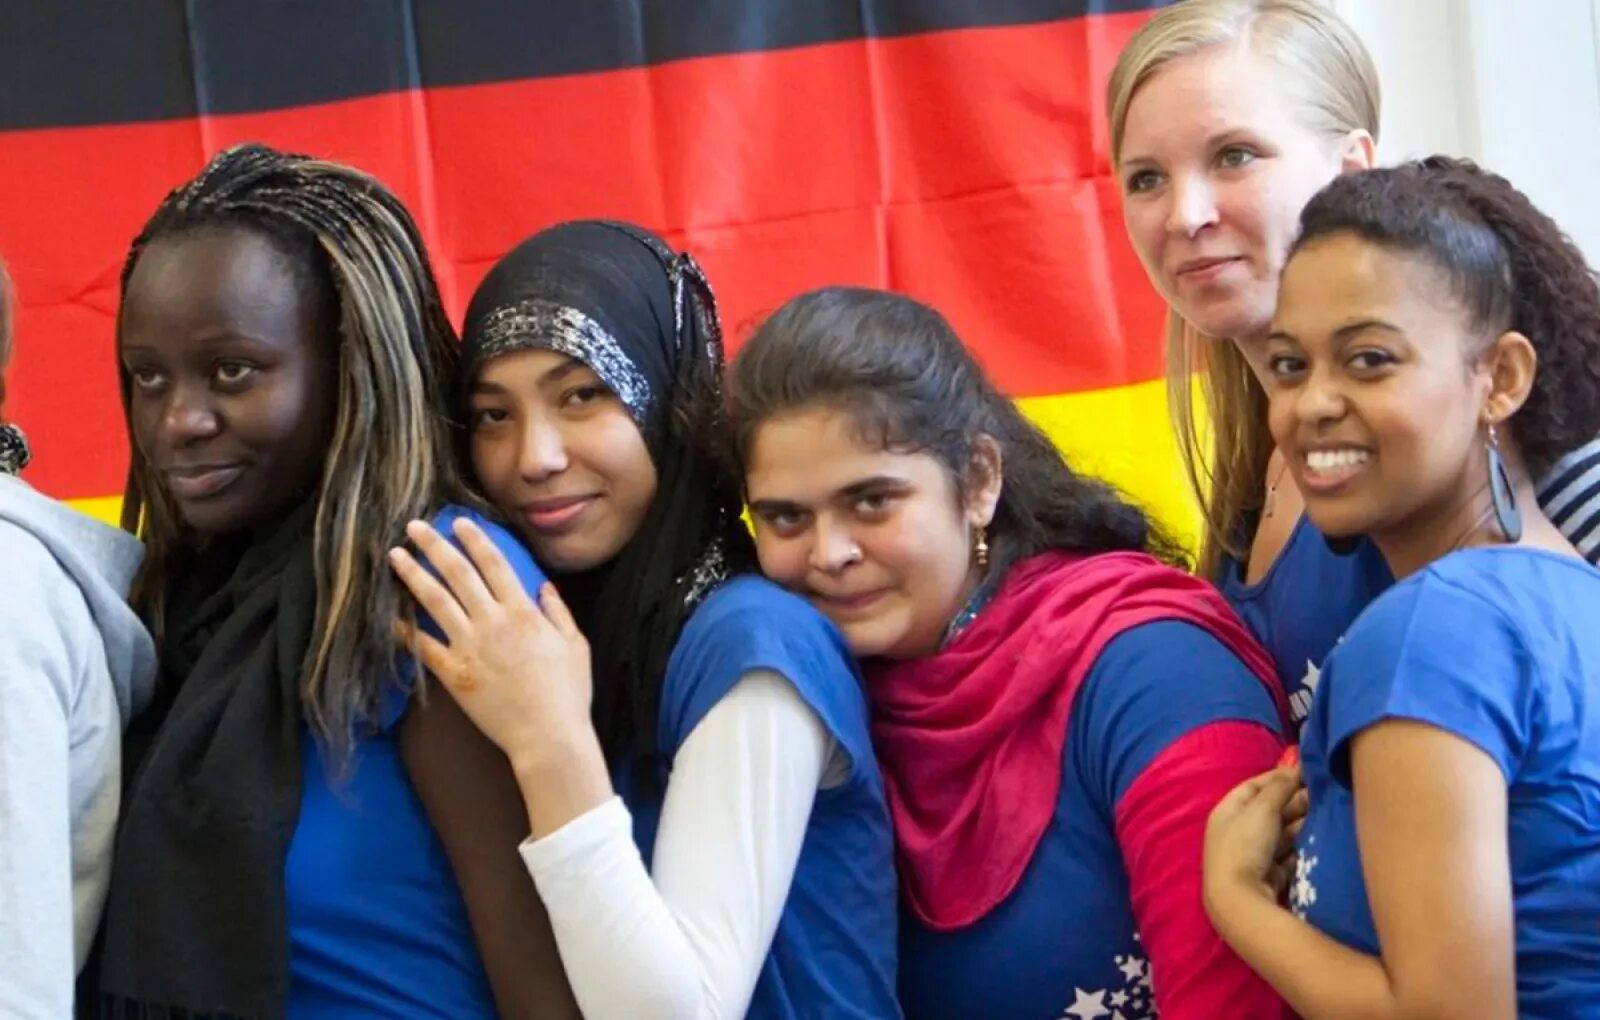 Европейцы современные. Иностранцы в Германии. Эмигранты в Германии. Мигранты в Германии. Мнения европейцев